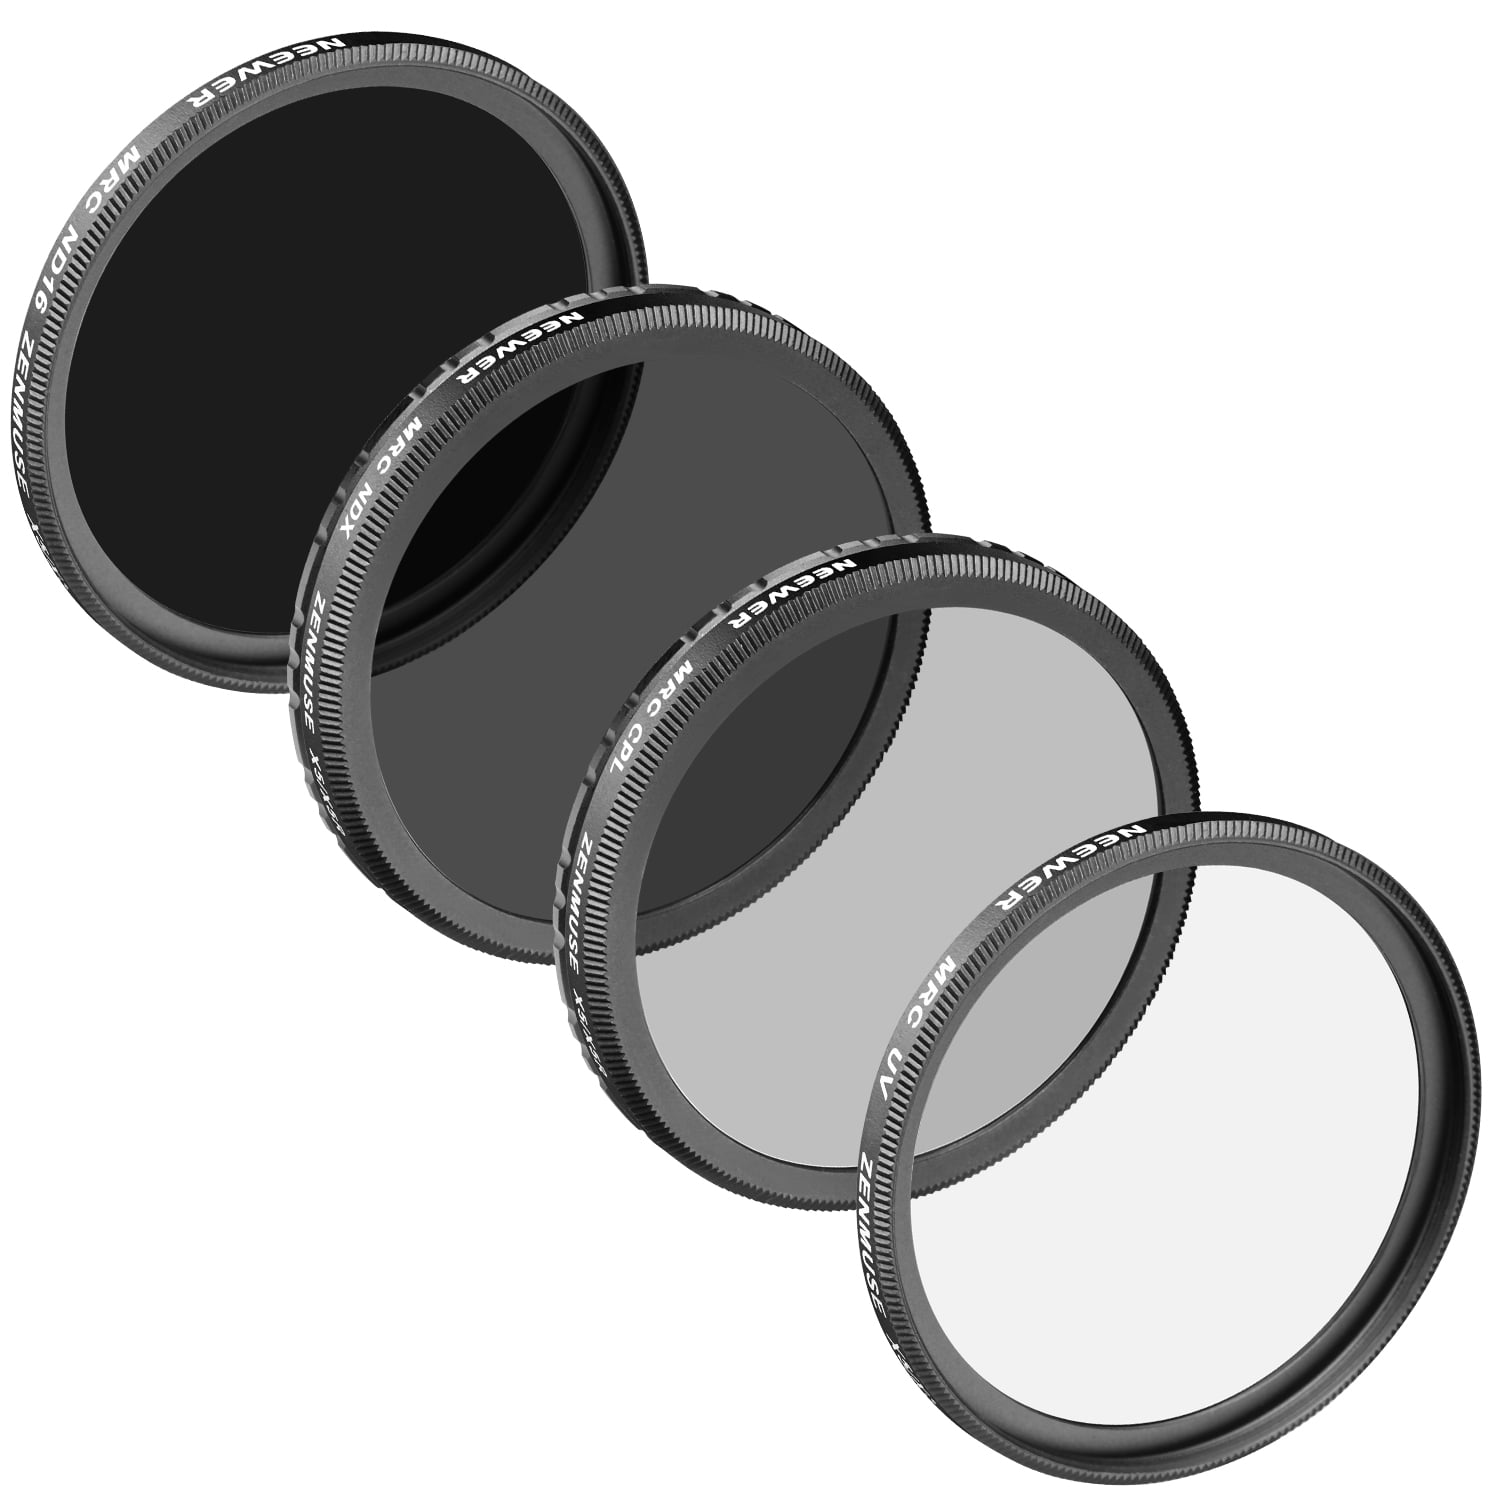 filtro ND16 + filtro ND2-400 Set de Pro filtros Neewer® para DJI Zenmuse X5 Inspire 1 hechos de múltiples capas con revestimiento de cristal óptico de alta definición Incluye: Filtro UV filtro CPL 